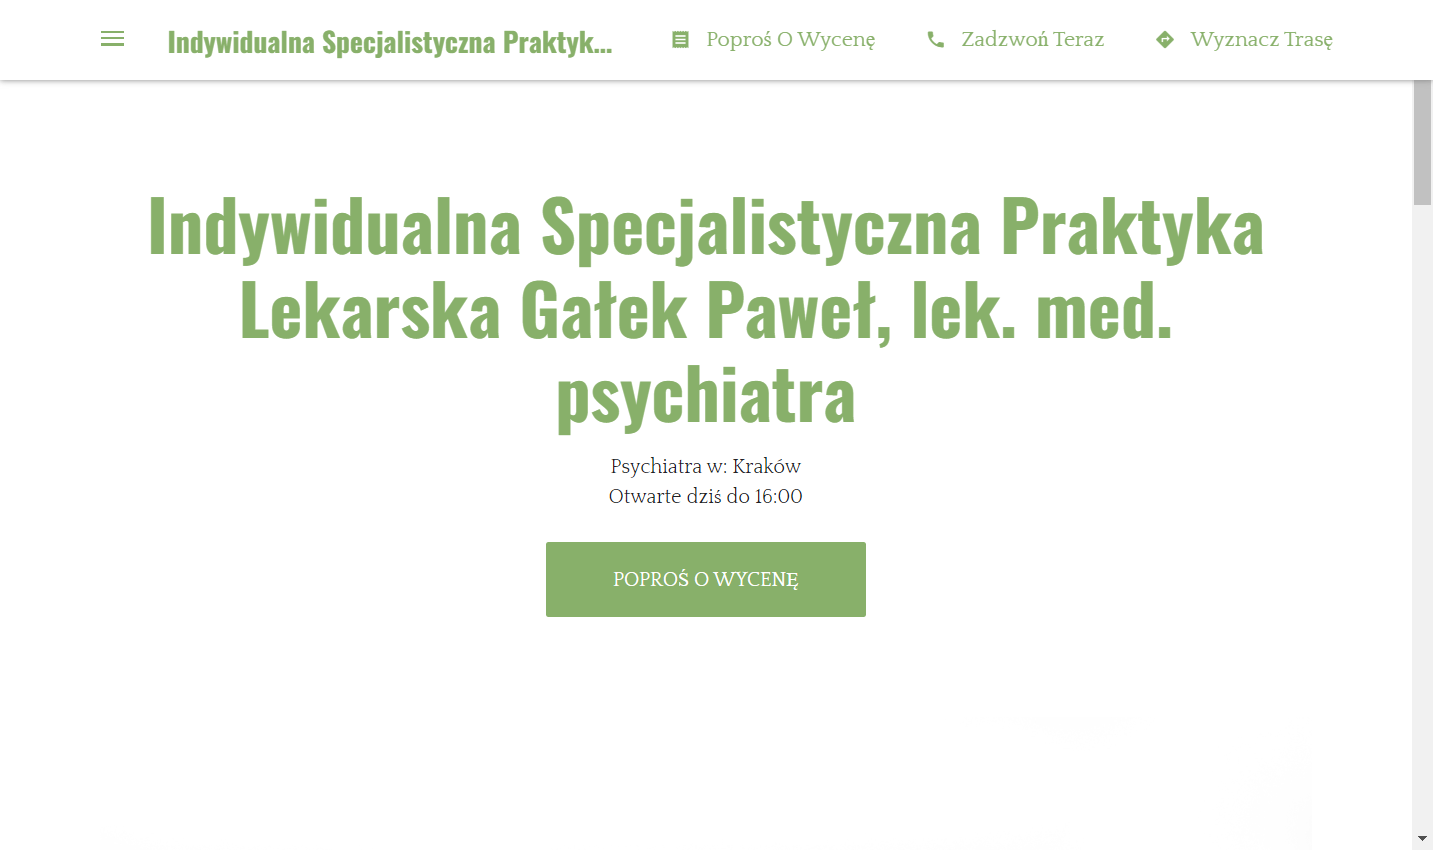 Indywidualna Specjalistyczna Praktyka Lekarska Gałek Paweł, lek. med. psychiatra